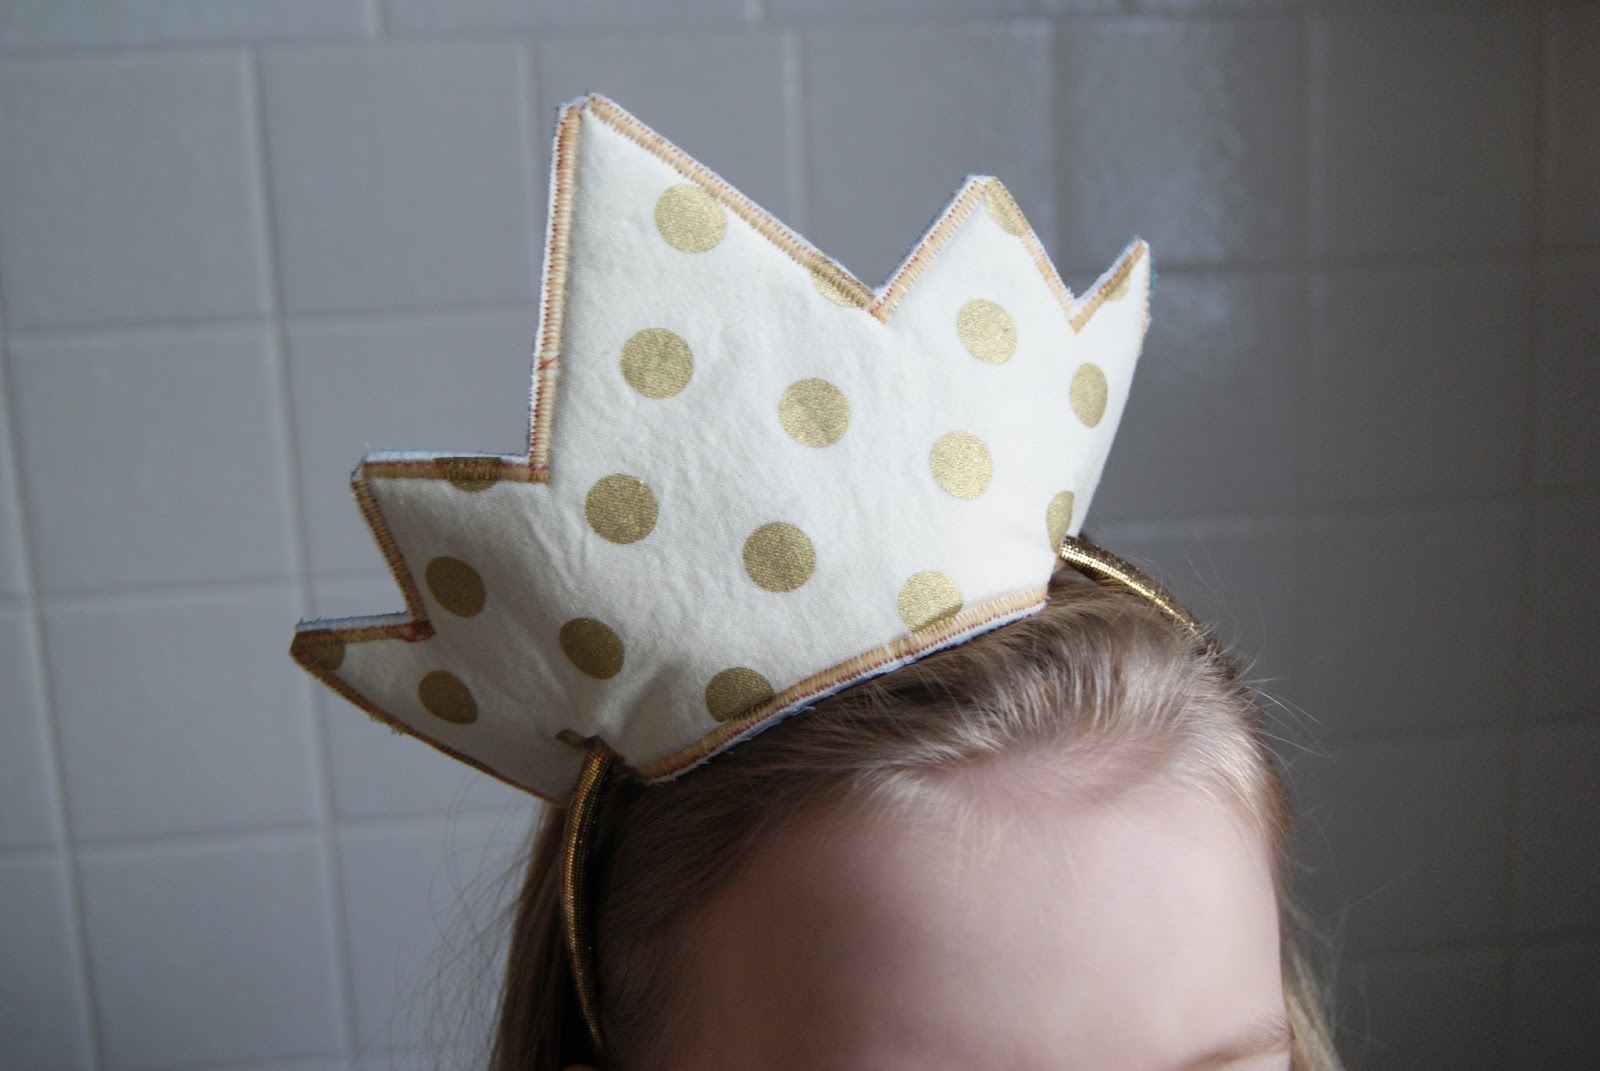 Gold Polka Dot Headband Crown by nest full of eggs